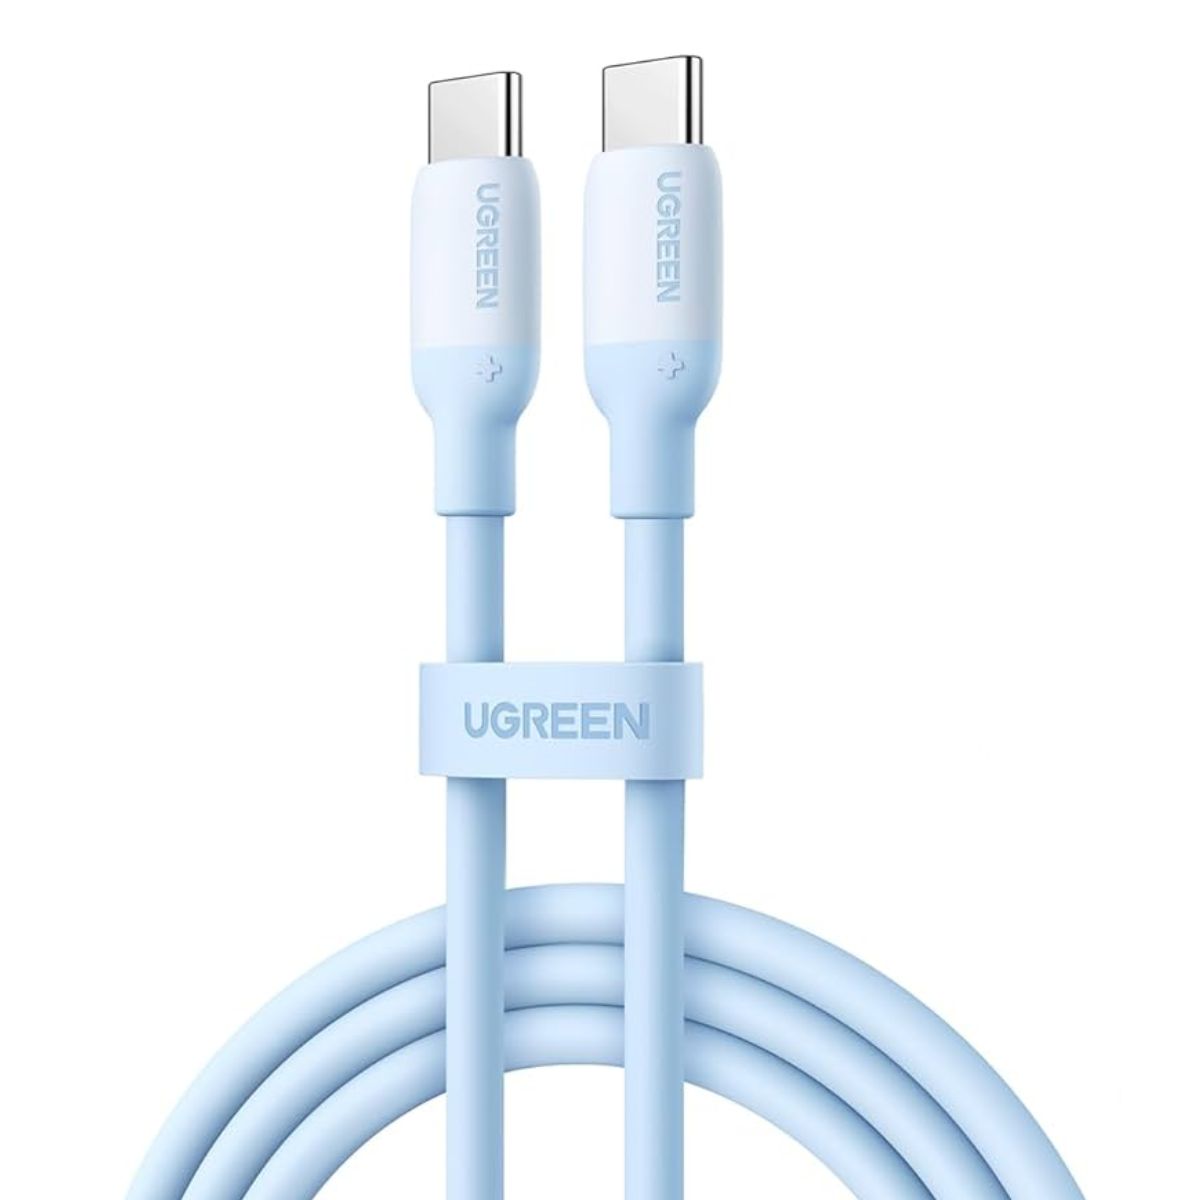 Cáp sạc chiều dài 1m USB-C đến USB-C Ugreen US563, 15279 màu xanh, silicone, tốc độ truyền 480Mbps